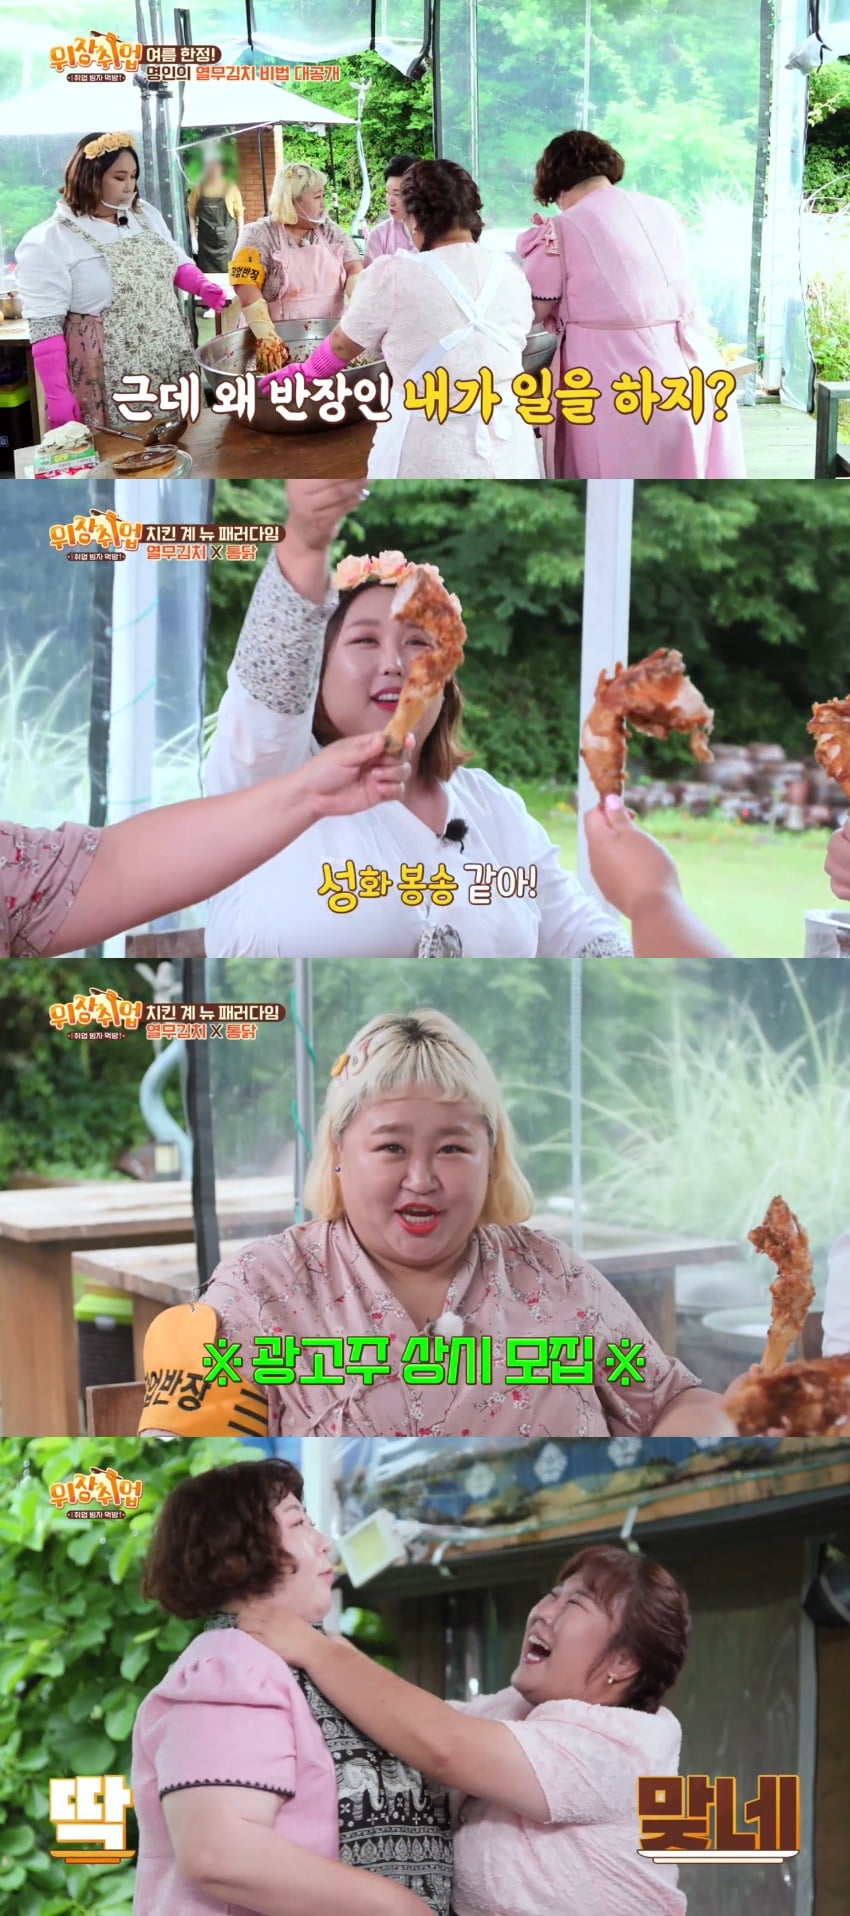 신기루, 홍윤화 선물 '8XL 바지'에 깜짝 "코끼리가 쇼할 때 입는 거 아냐?"('위장취업')